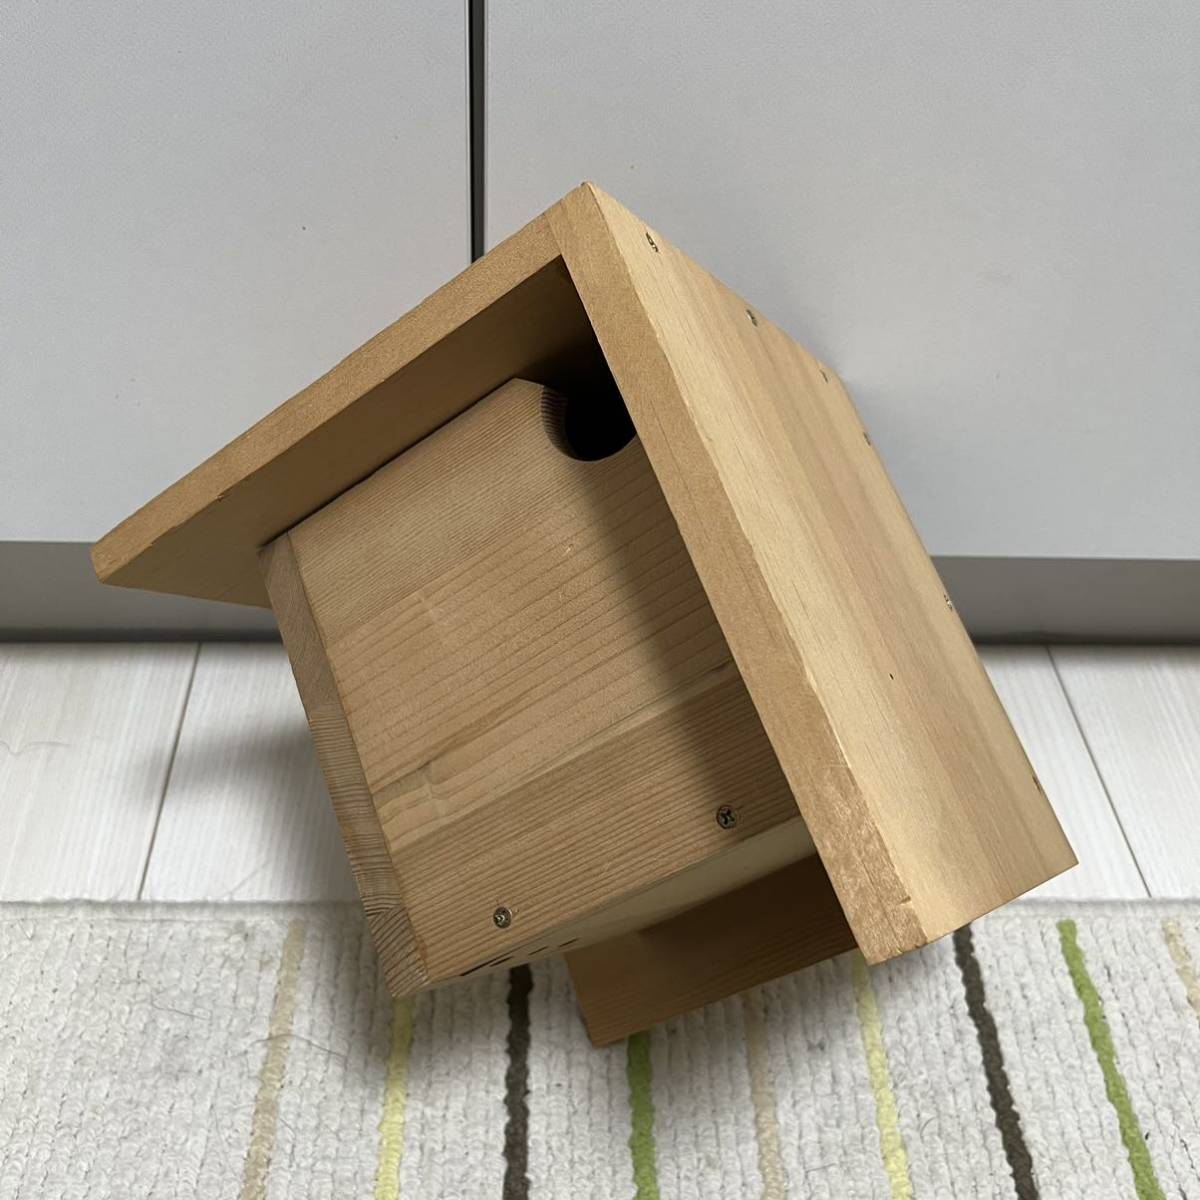  bird. nest box hand made wooden 